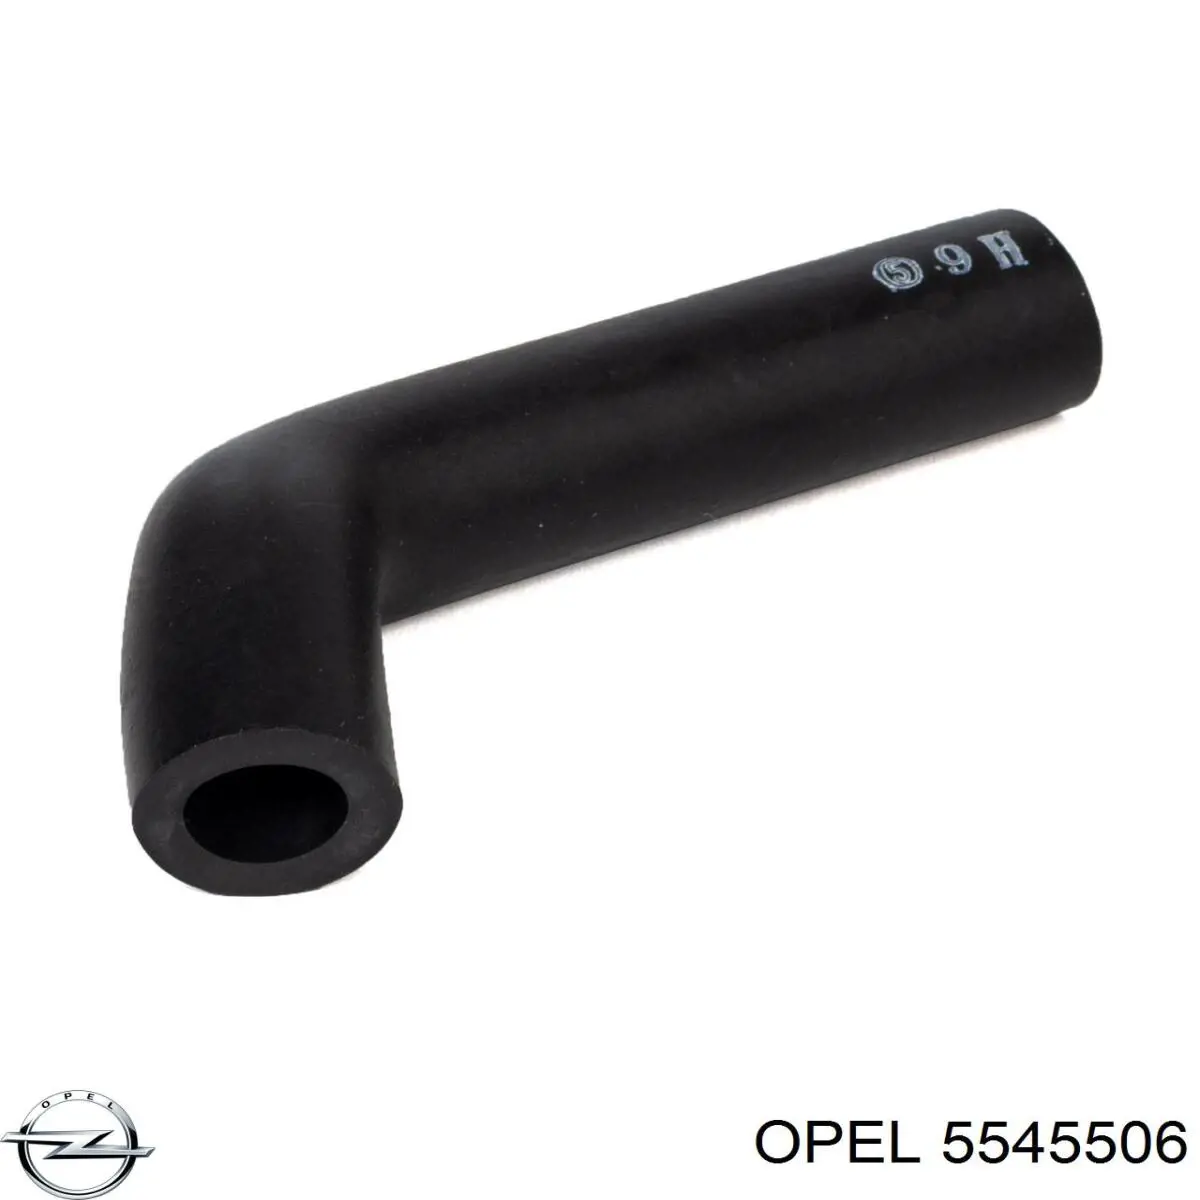 5545506 Opel tubo de ventilacion del carter (separador de aceite)